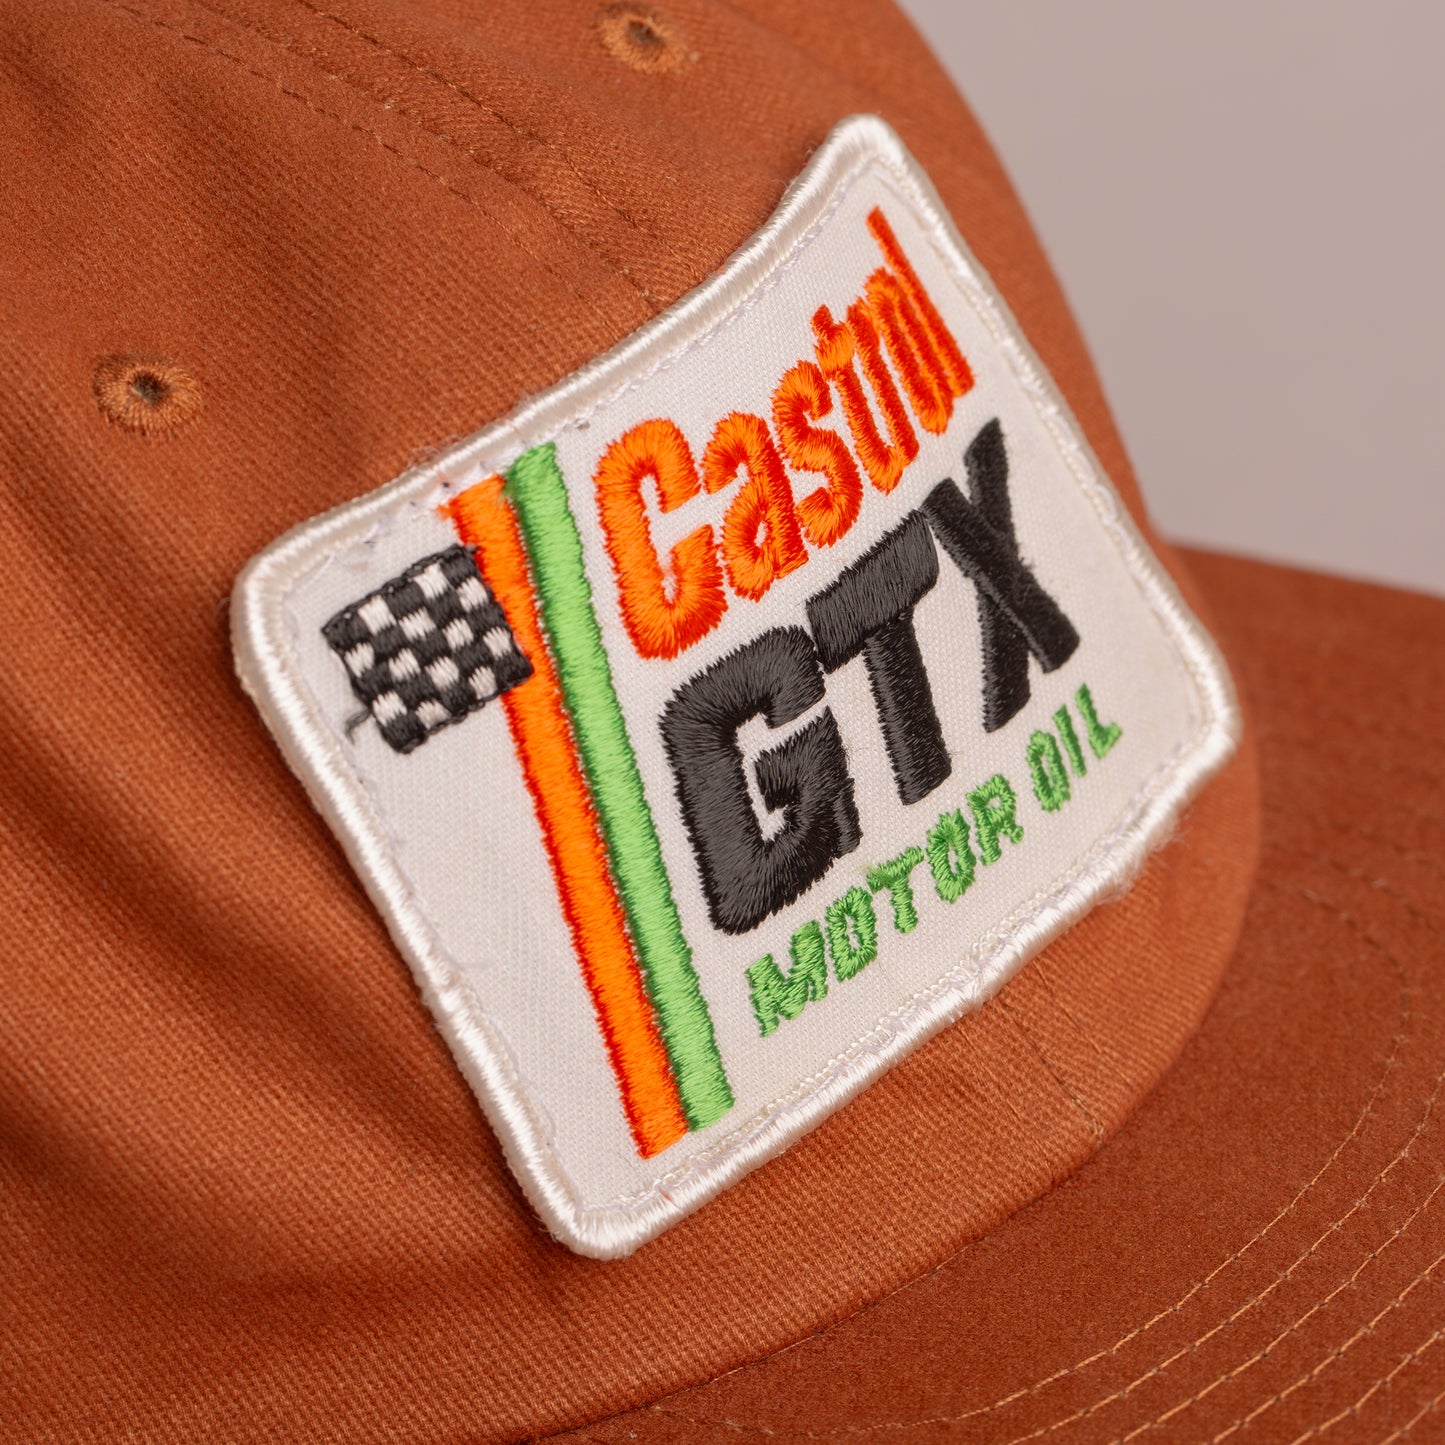 Castrol GTX Motor Oil